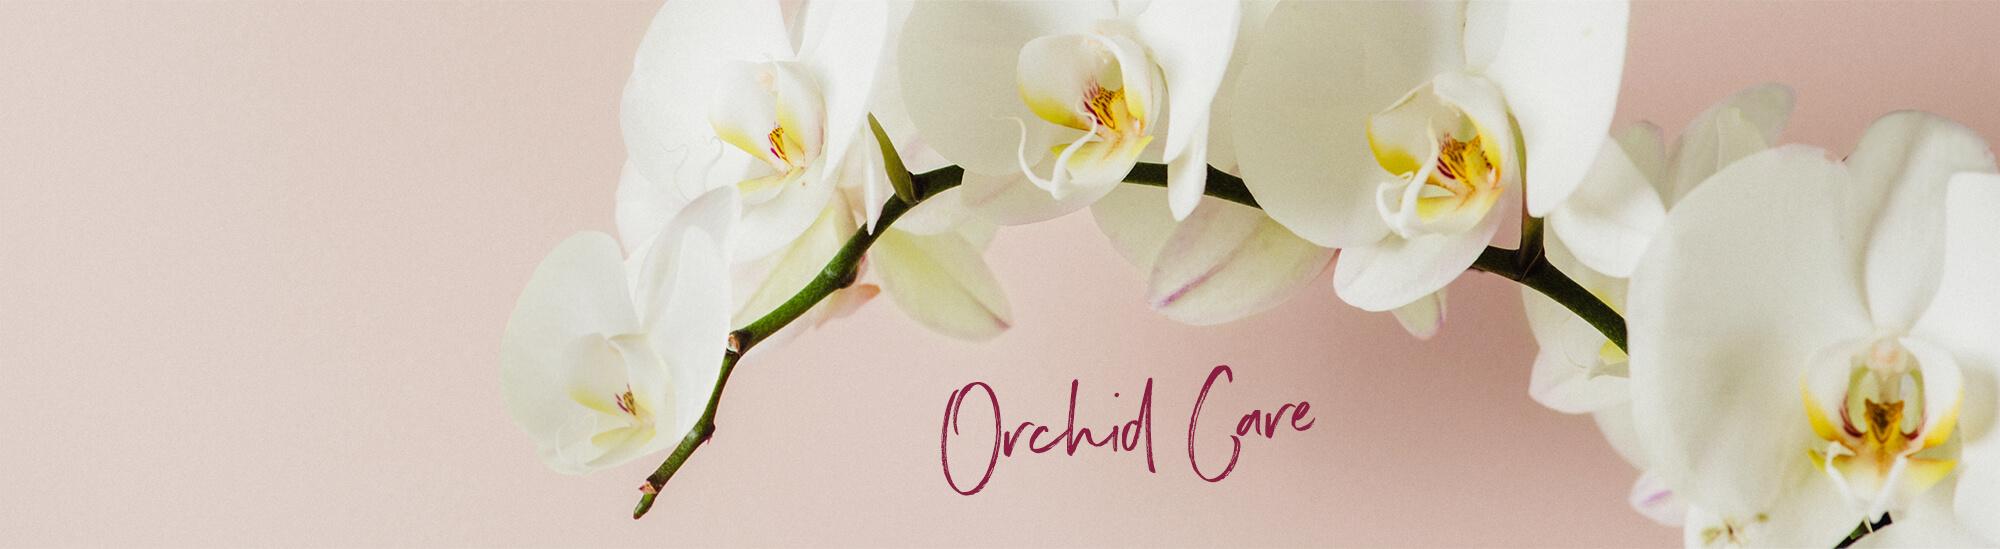 Conseils et astuces pour entretenir vos orchidées